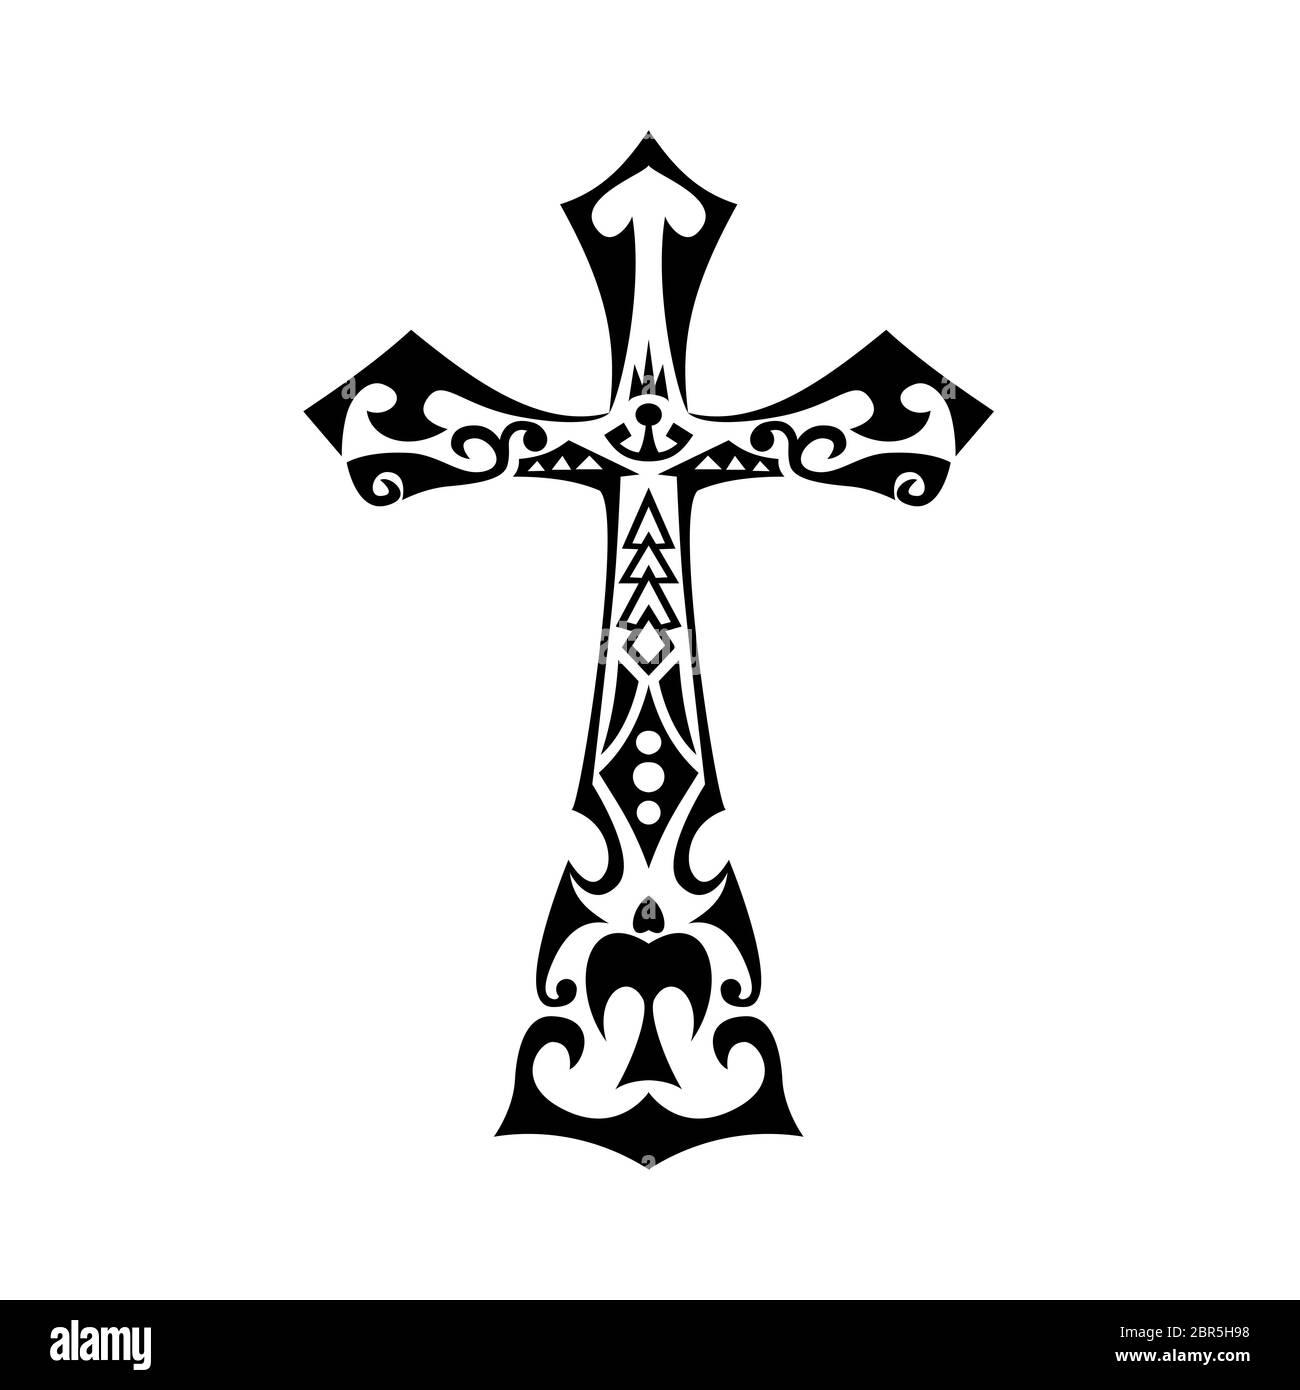 Illustration de style tatouage tribal polynésien de croix avec les Maoris et Polynésiens, influence hawaïenne avec symboles tribaux typiques comme les tortues, enata, sp Banque D'Images